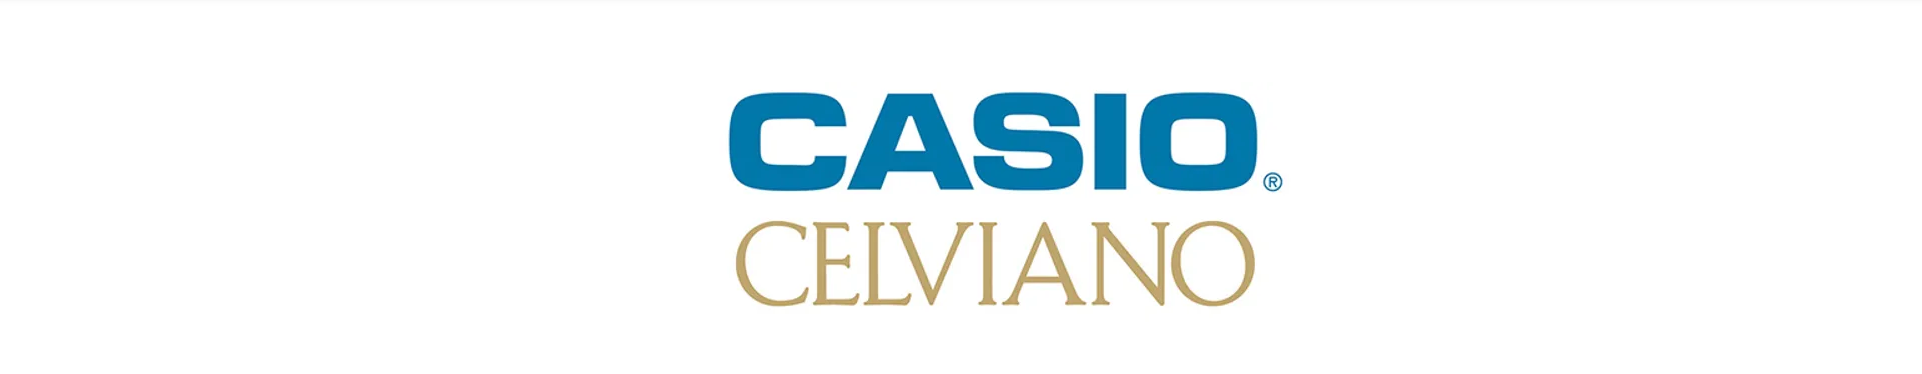 Casio Celviano